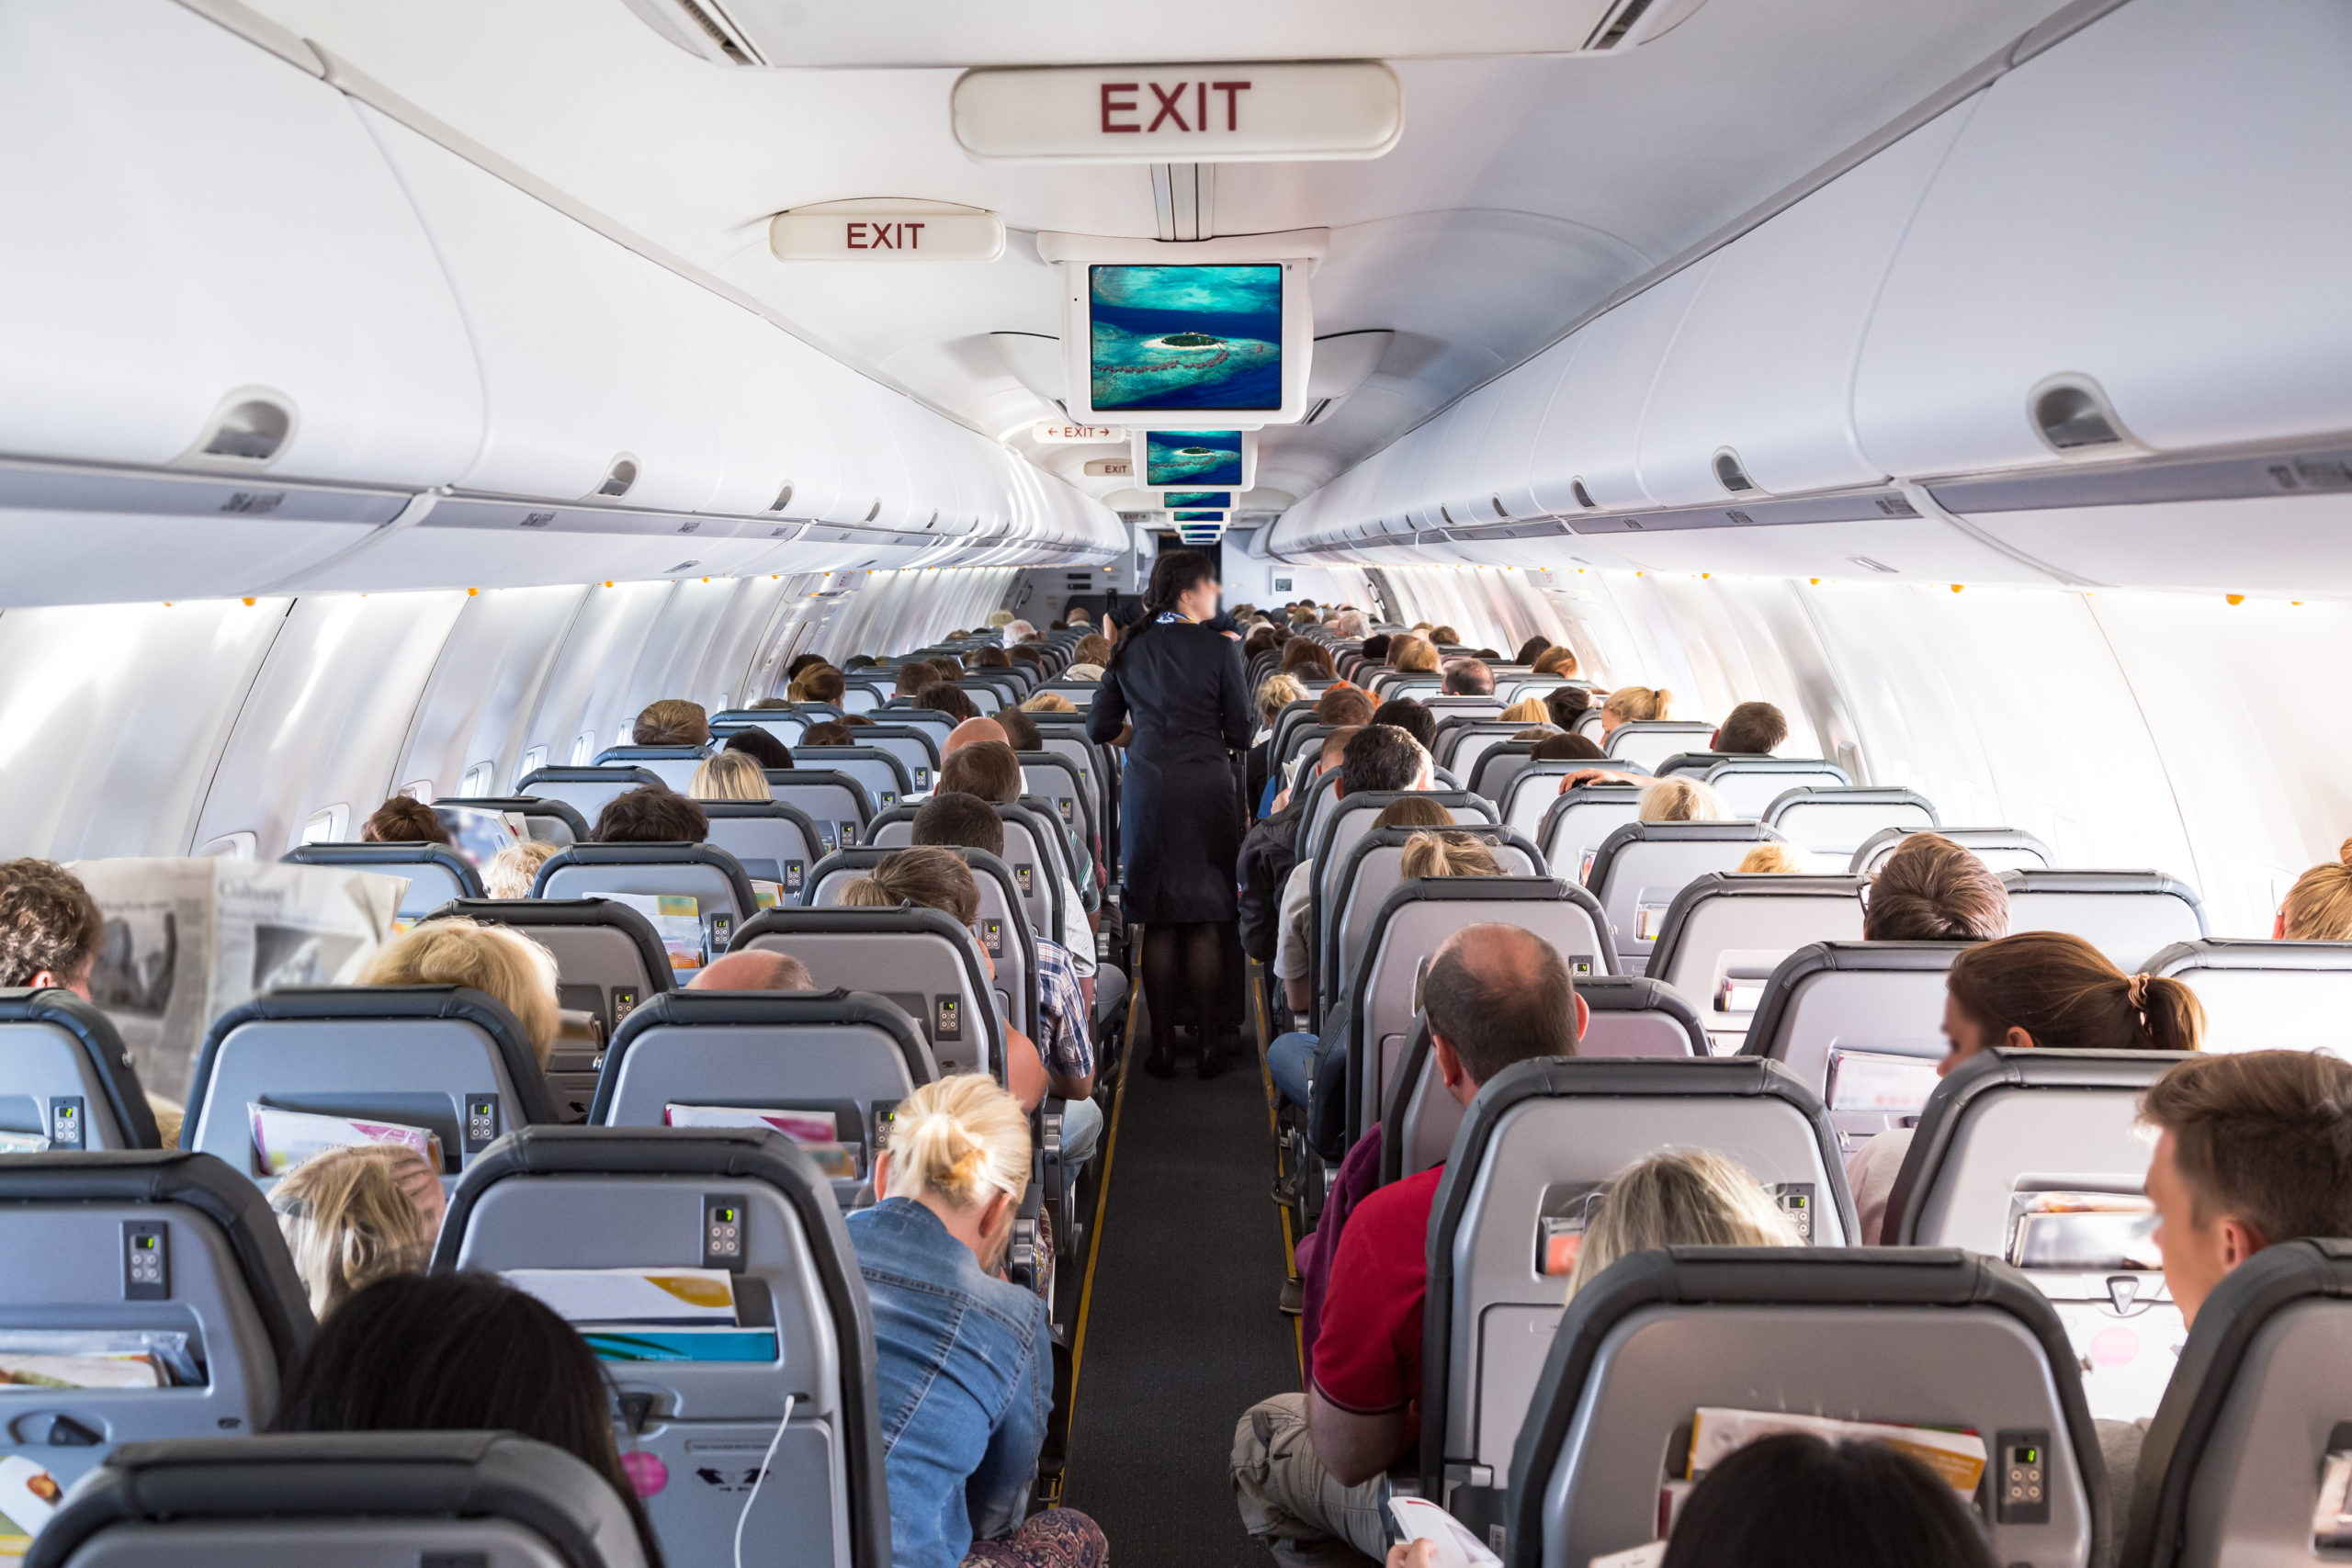 https://jayatravel.com/wp-content/uploads/2022/10/jaya-travel-tours-window-or-aisle-seat-airplane-with-passangers-and-stewardess-scaled.jpeg